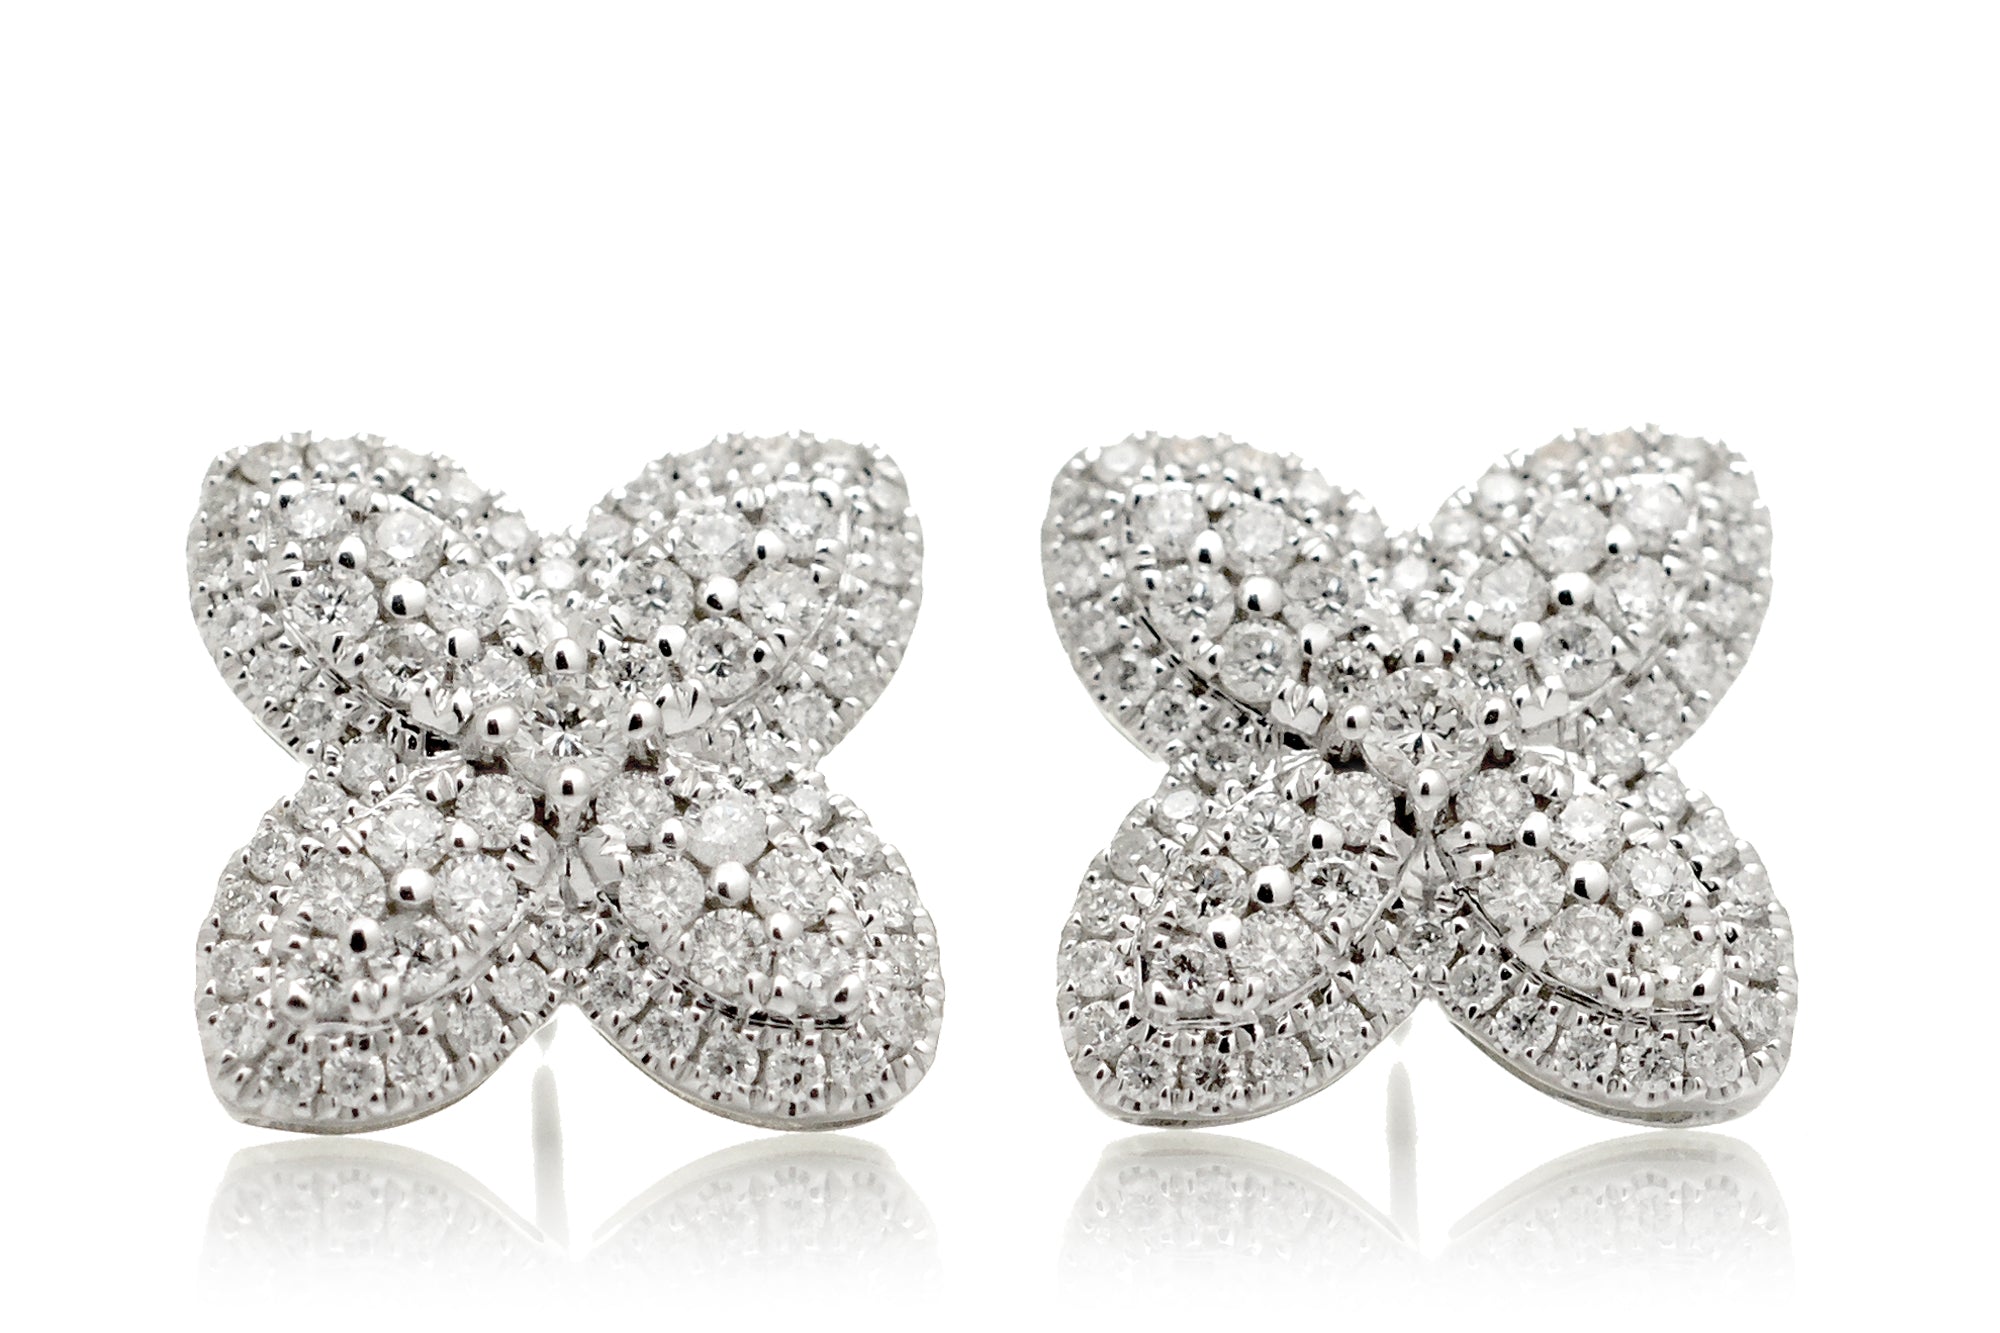 Diamond cluster clover diamond studs earrings in white gold